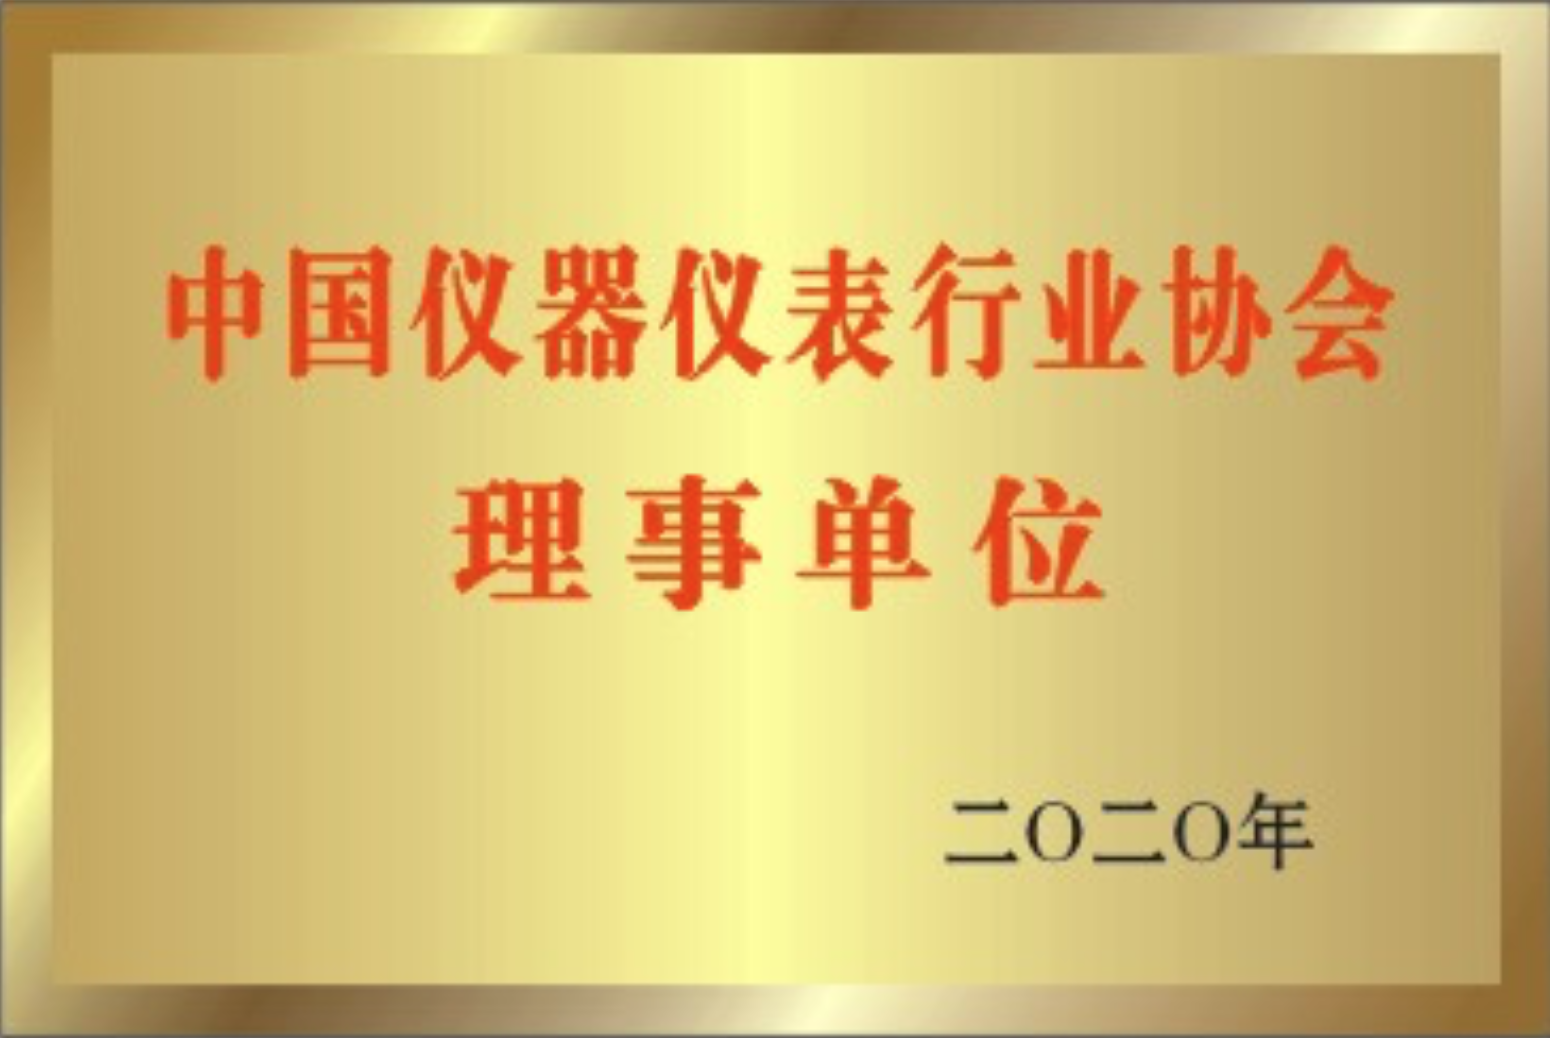 中國儀器儀表行業協會</br>理事單位